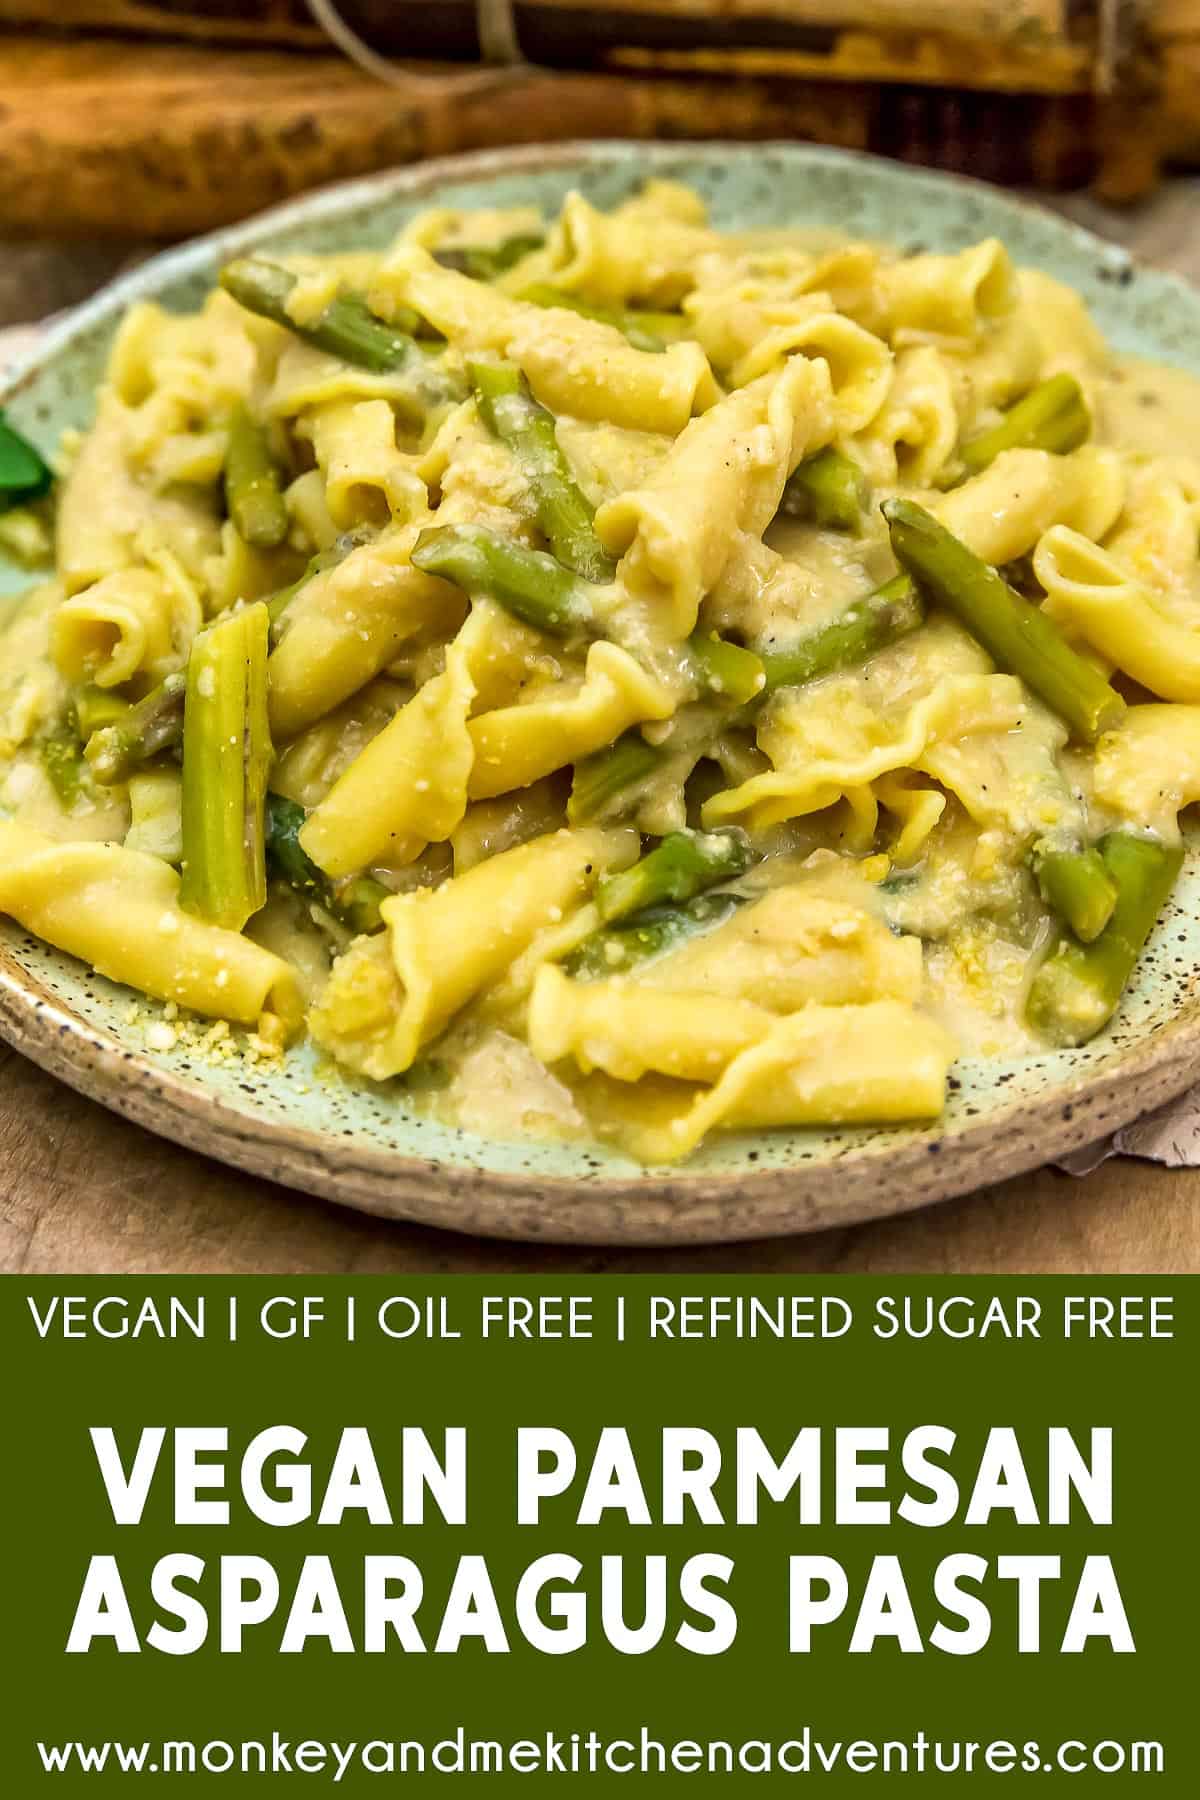 Vegan Parmesan Asparagus Pasta with text description